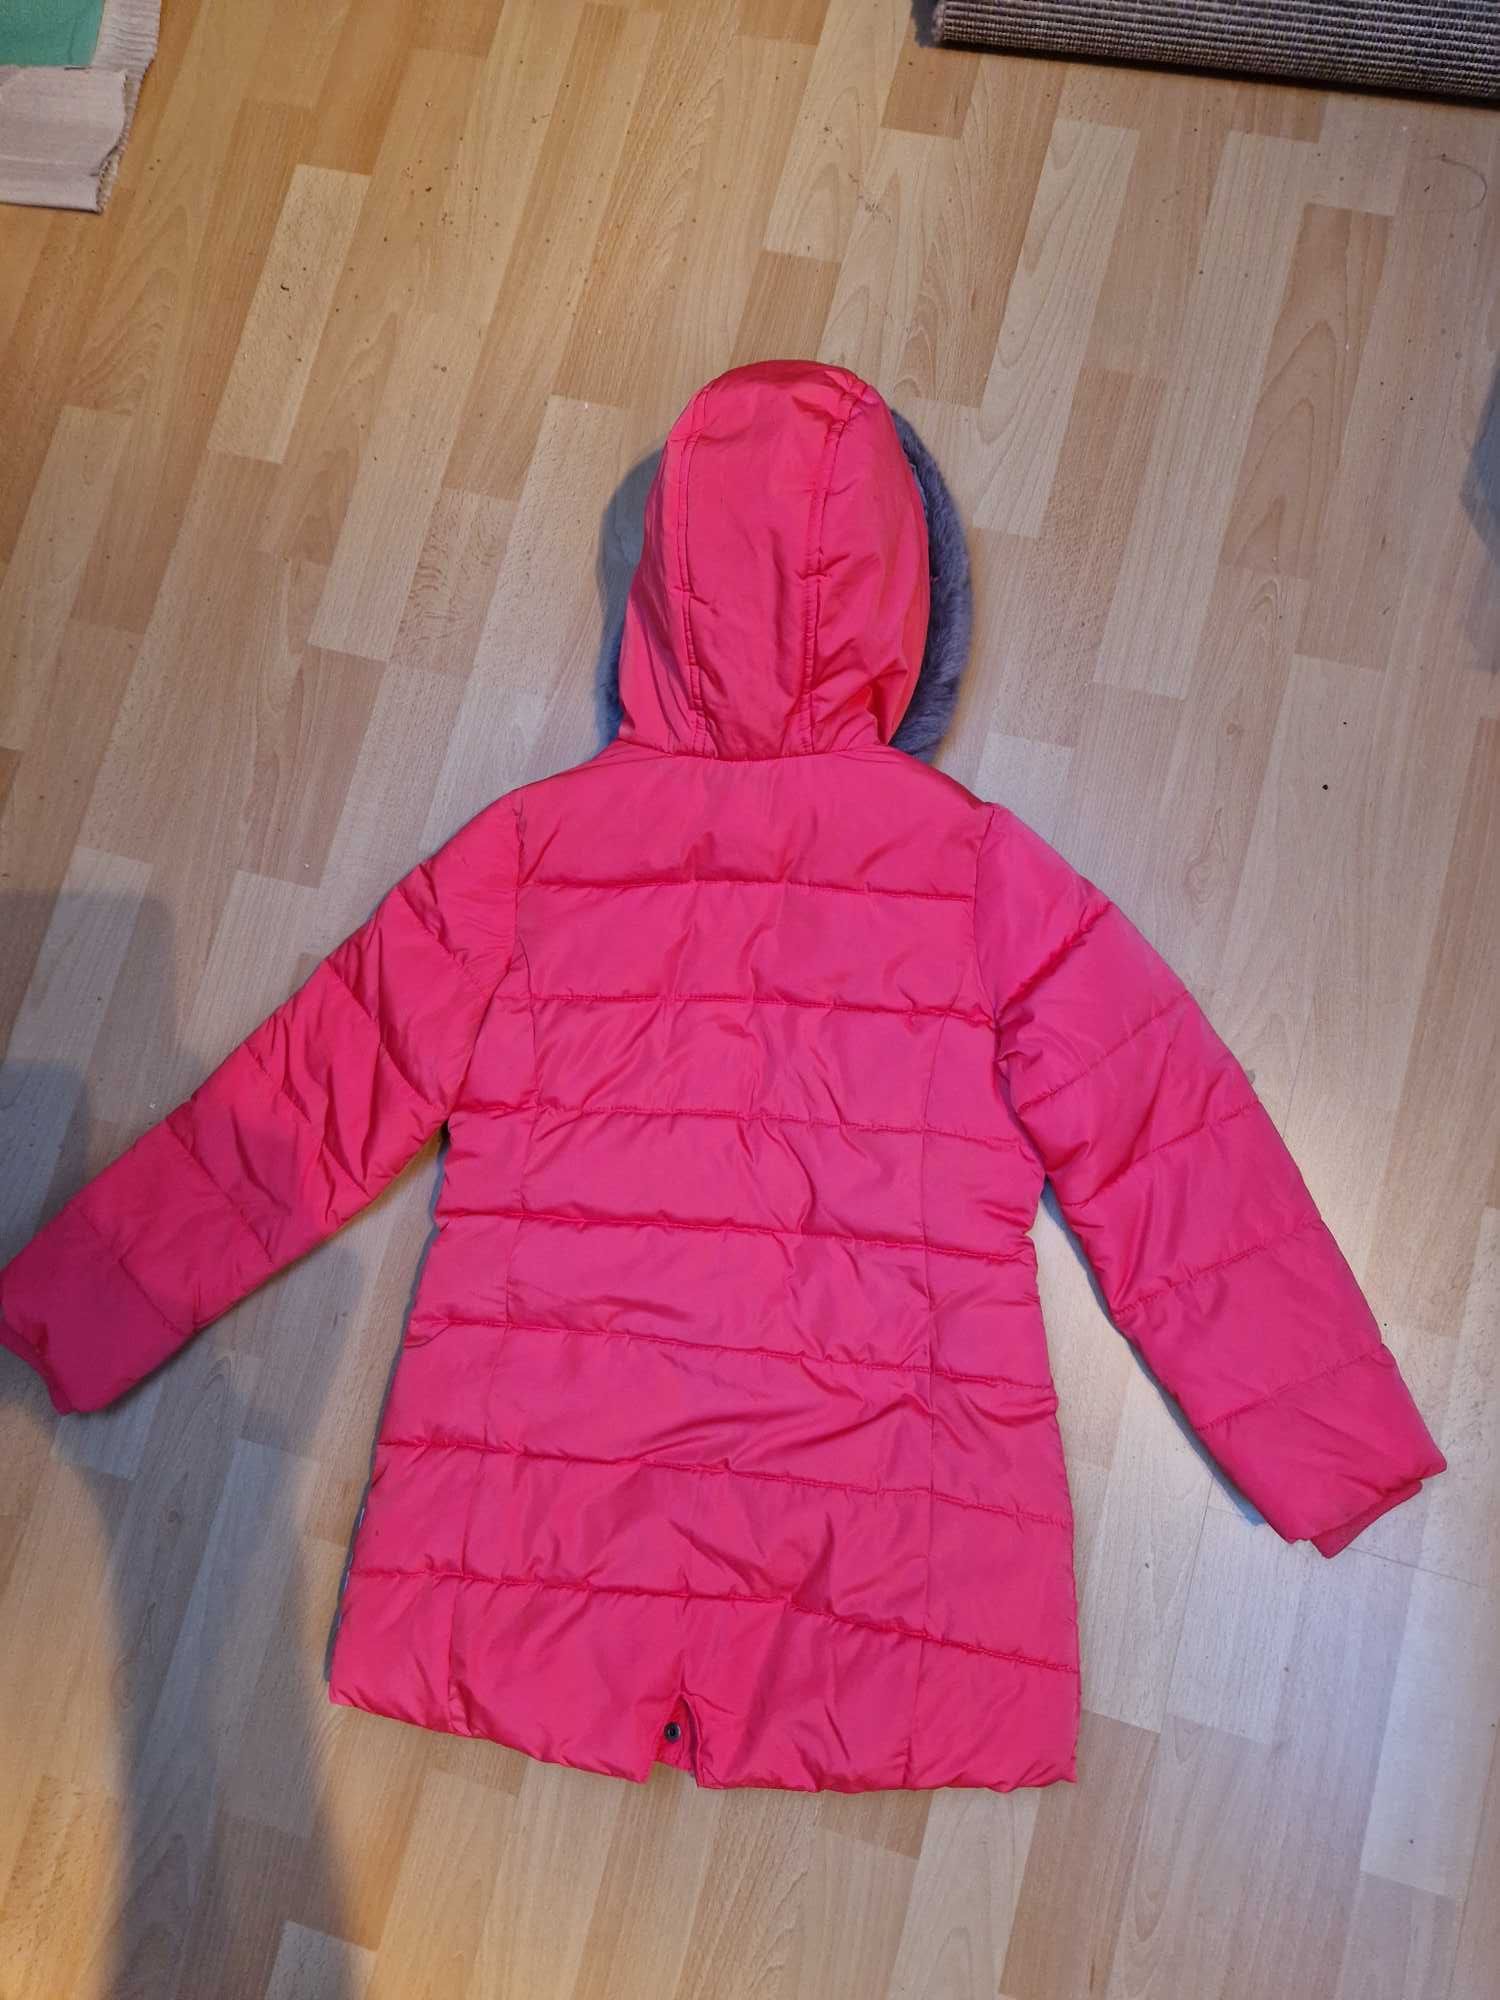 OKAIDI kurtka zimowa, rozmiar 140 cm, czerwona, stan bardzo dobry